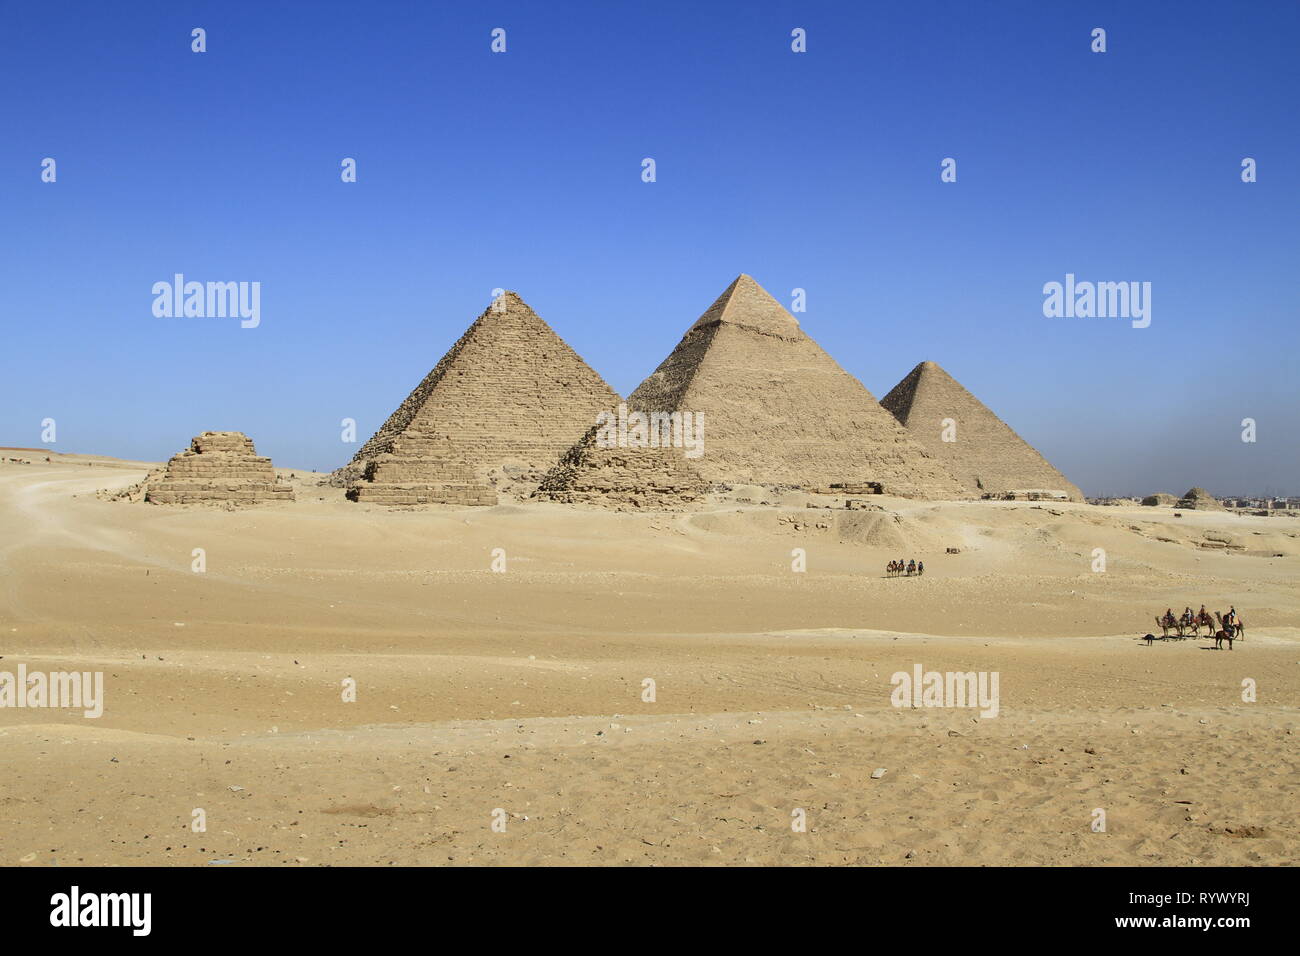 Pyramide de Gizeh, Karnak temple complexe, Giza, Le Caire, Egypte Banque D'Images